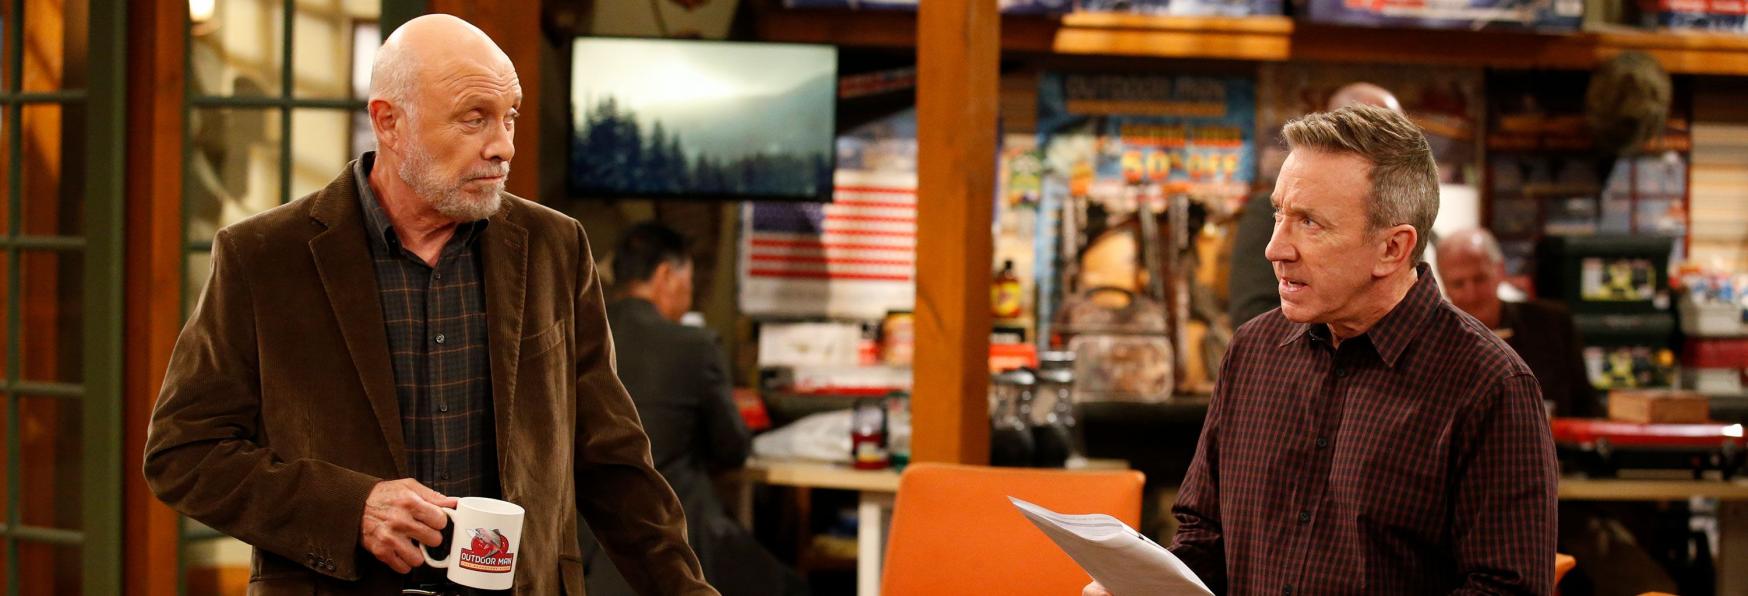 L'Uomo di Casa: la Serie TV con Tim Allen terminerà con la 9° Stagione